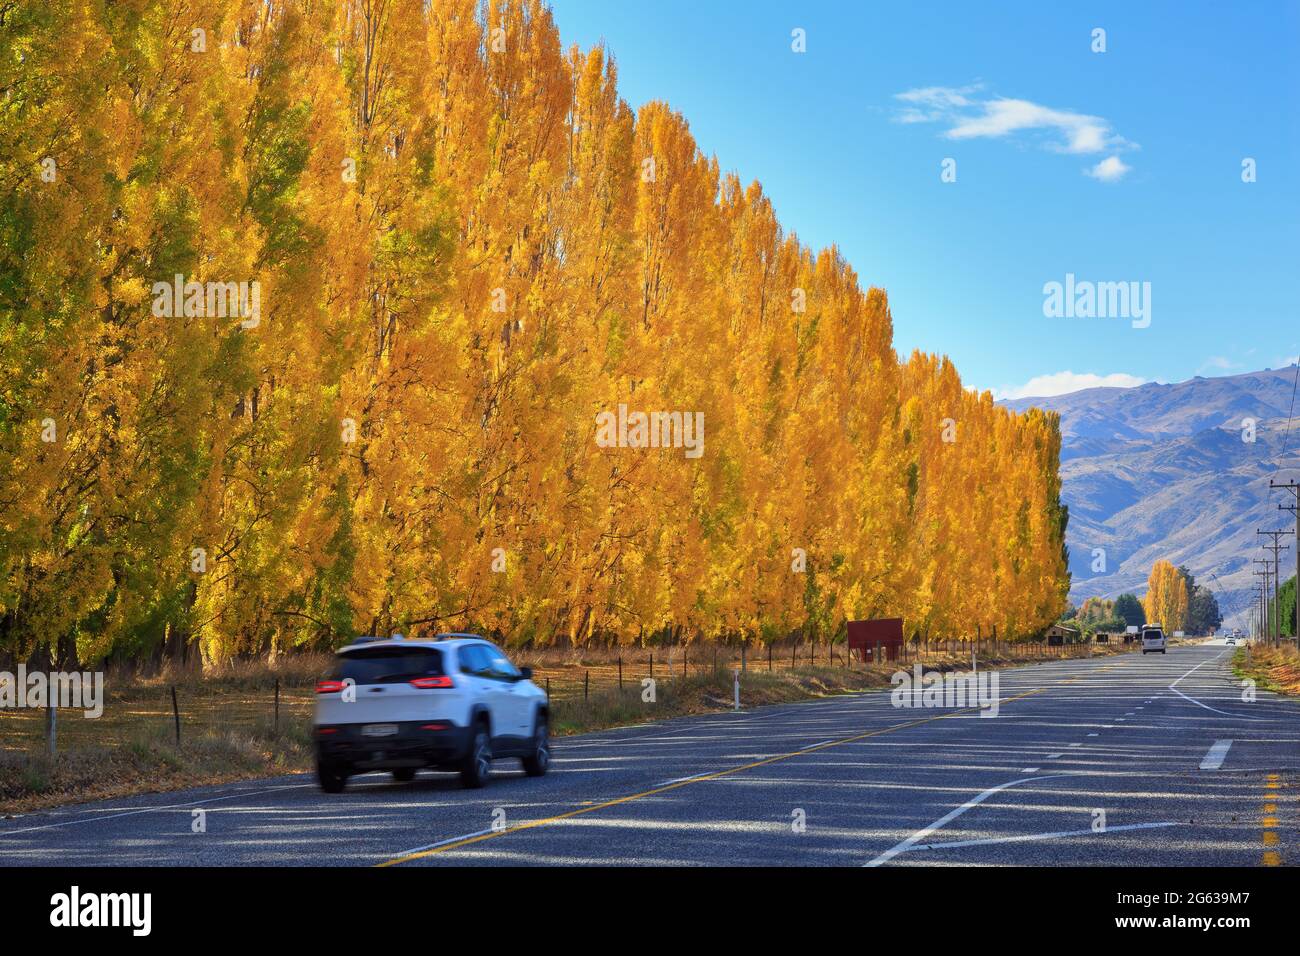 Una fila di alberi di pioppo con foglie dorate d'autunno accanto ad una strada nella regione di Otago, Isola del Sud, Nuova Zelanda Foto Stock